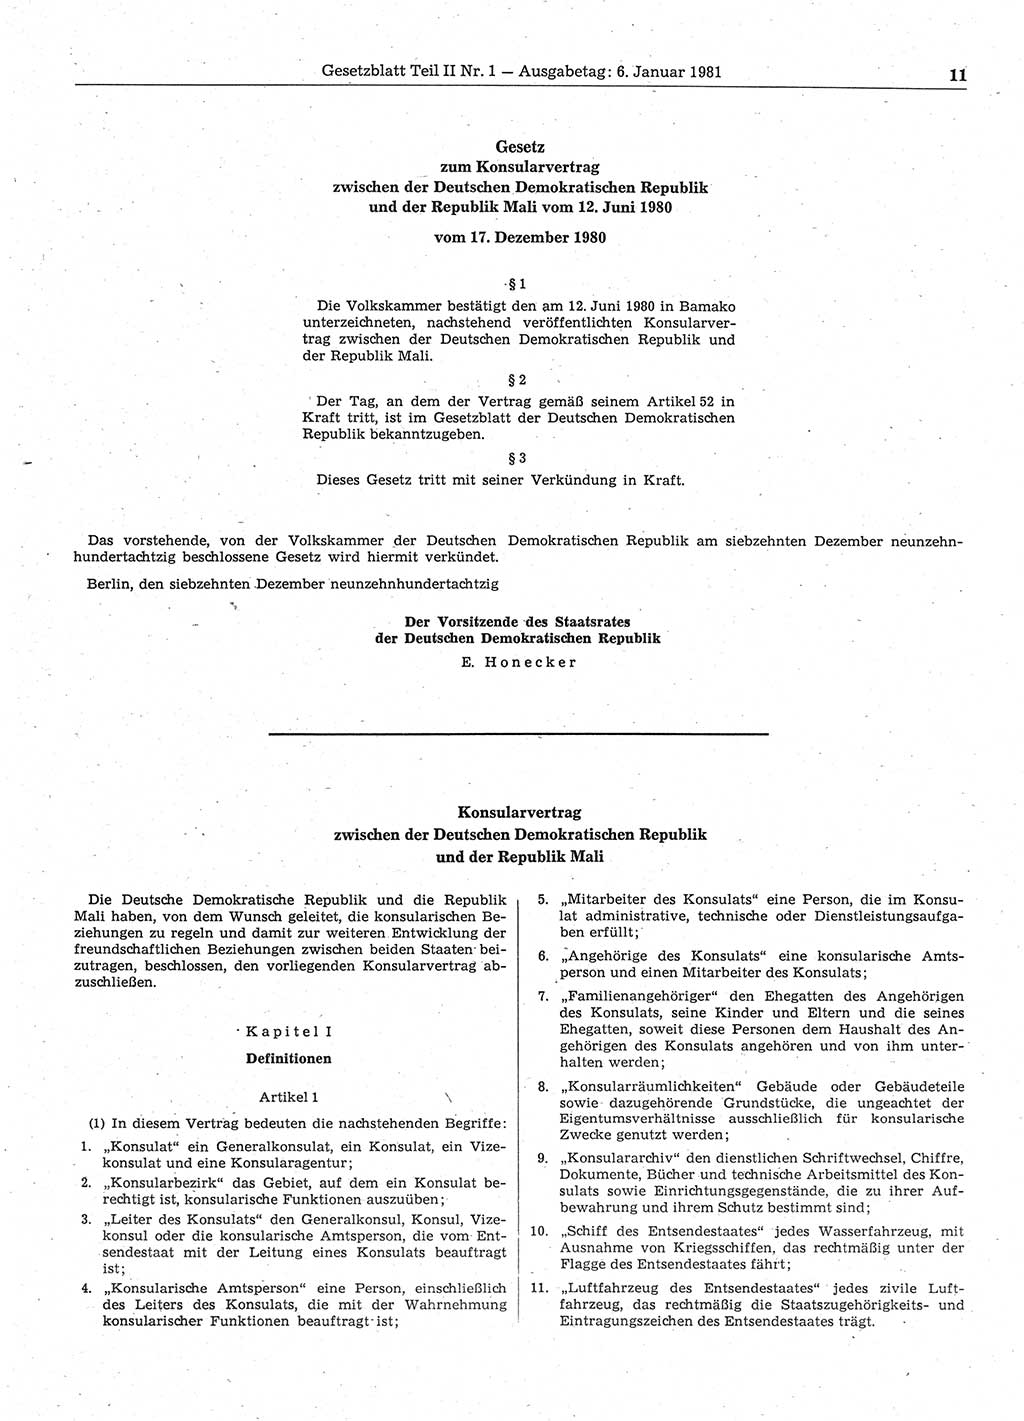 Gesetzblatt (GBl.) der Deutschen Demokratischen Republik (DDR) Teil ⅠⅠ 1981, Seite 11 (GBl. DDR ⅠⅠ 1981, S. 11)